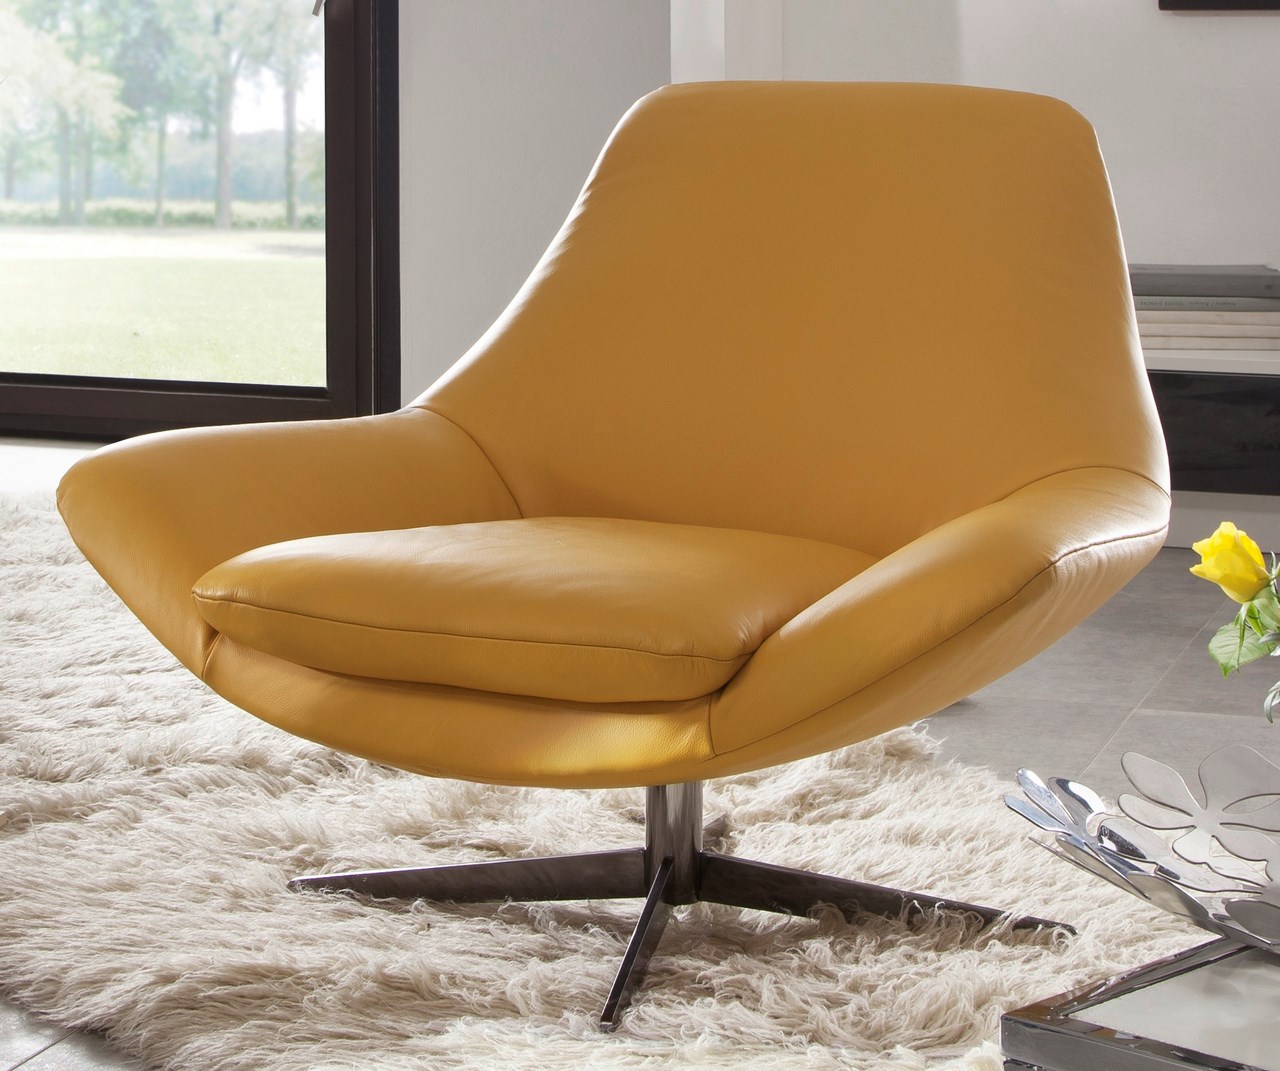 Nouveau : fauteuil design cuir pied pivotant AllEN & AllAN « Blog de